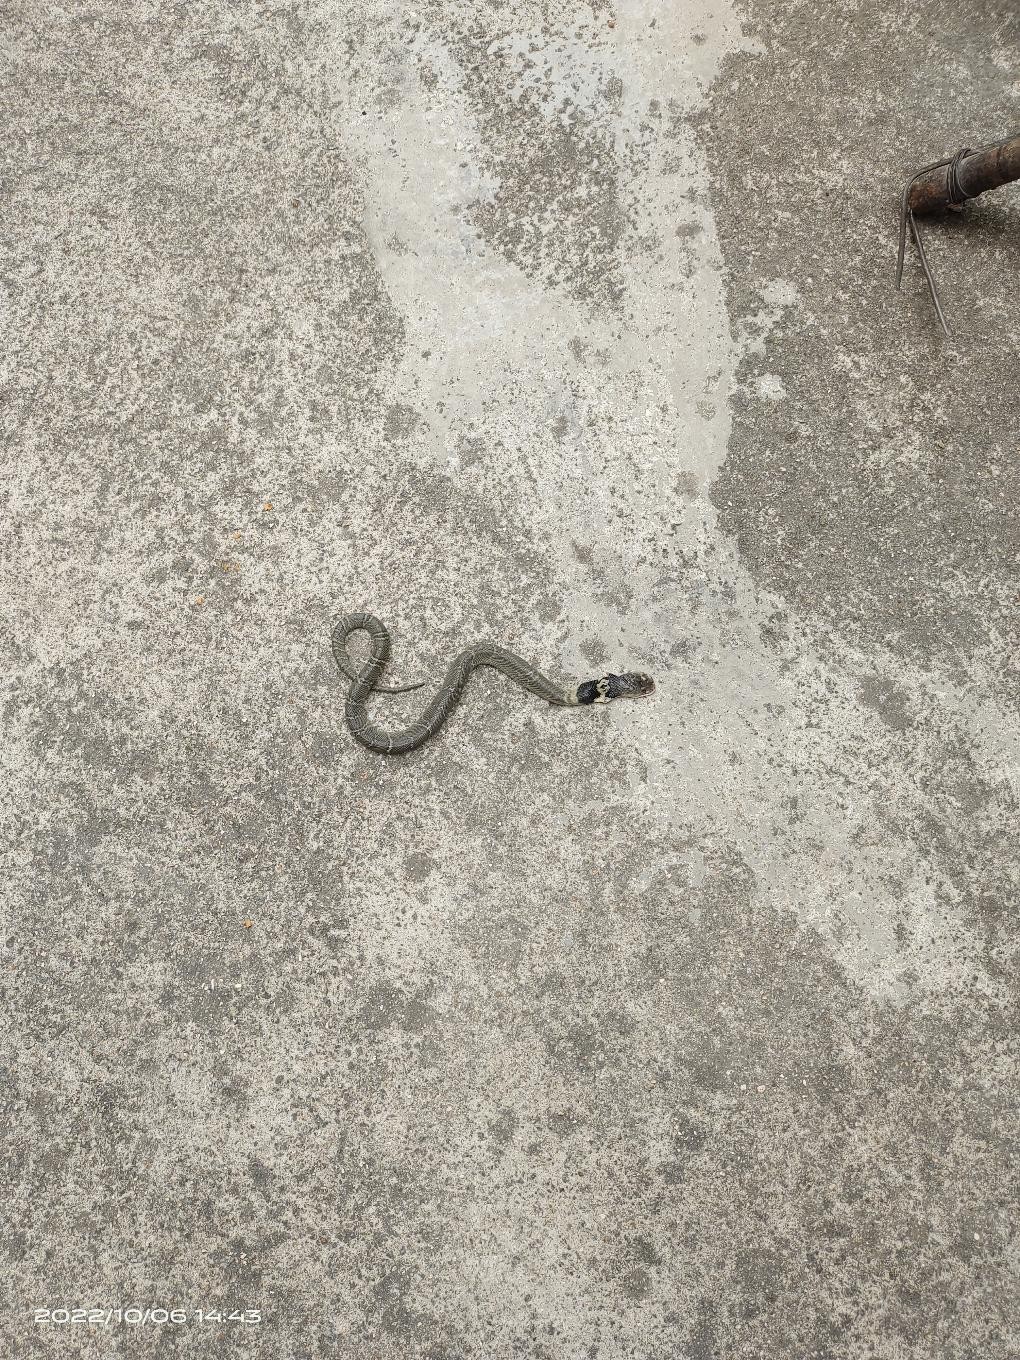 这是什么蛇